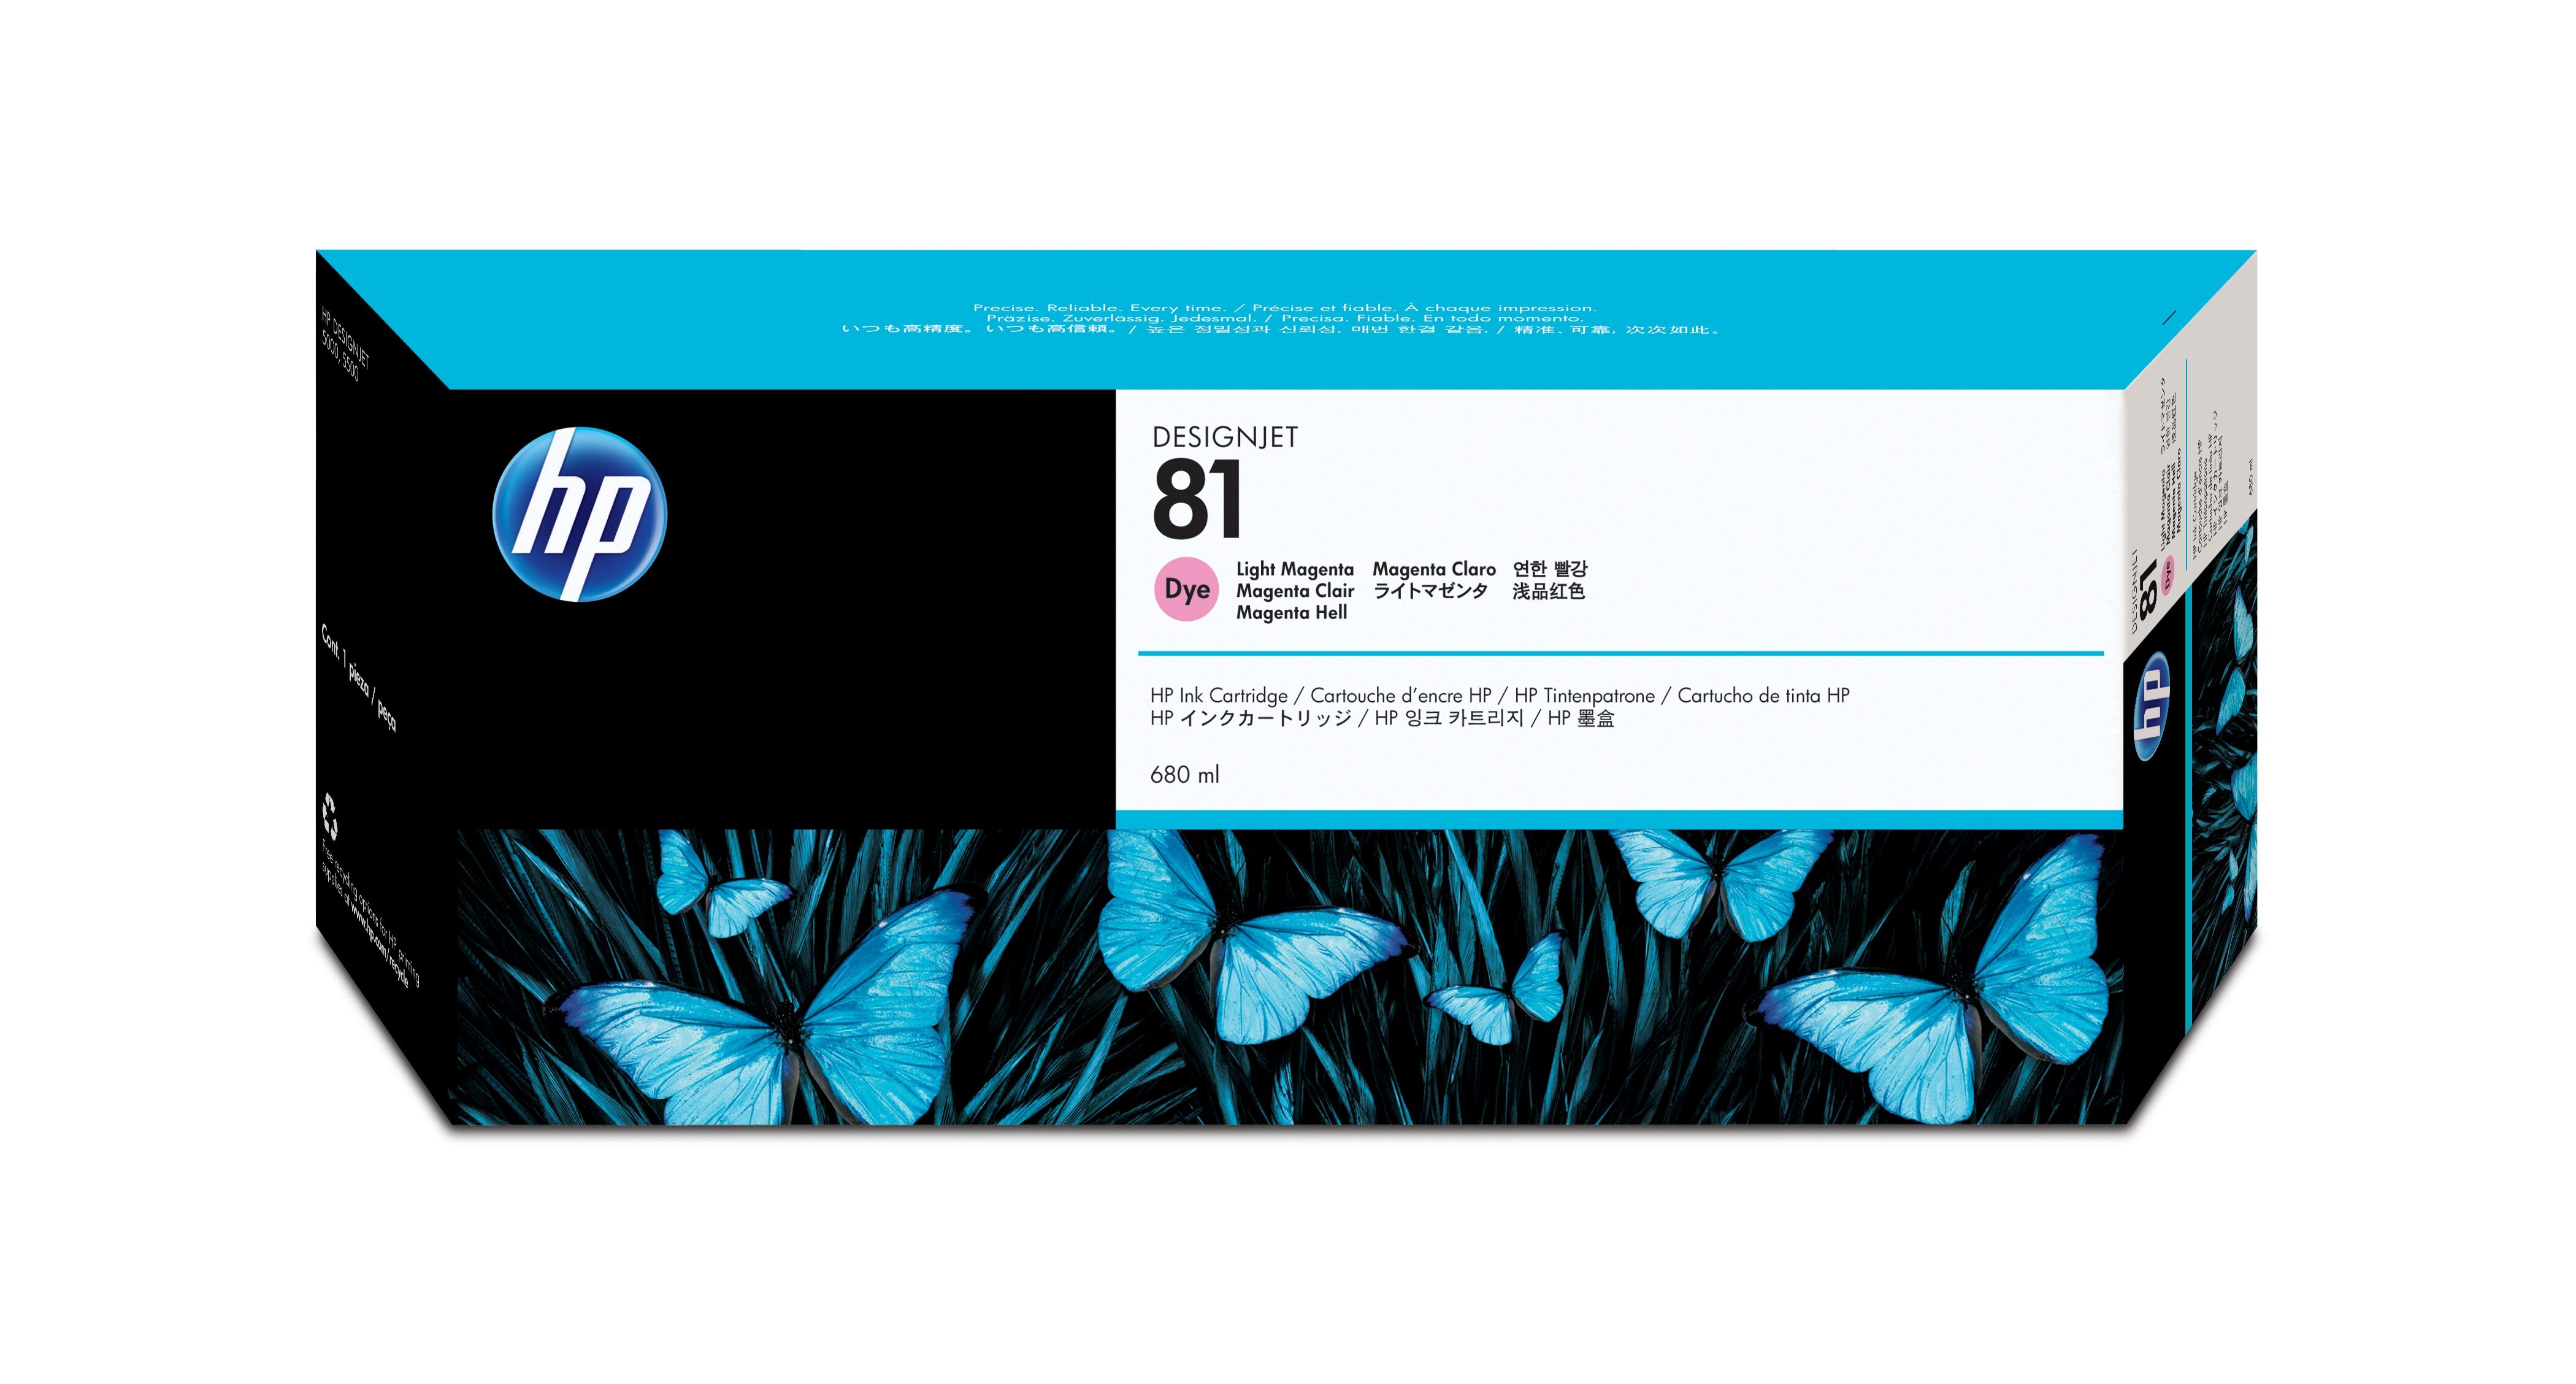 HP 81 licht-magenta kleurstofinktcartridge, 680 ml single pack / Lichtmagenta